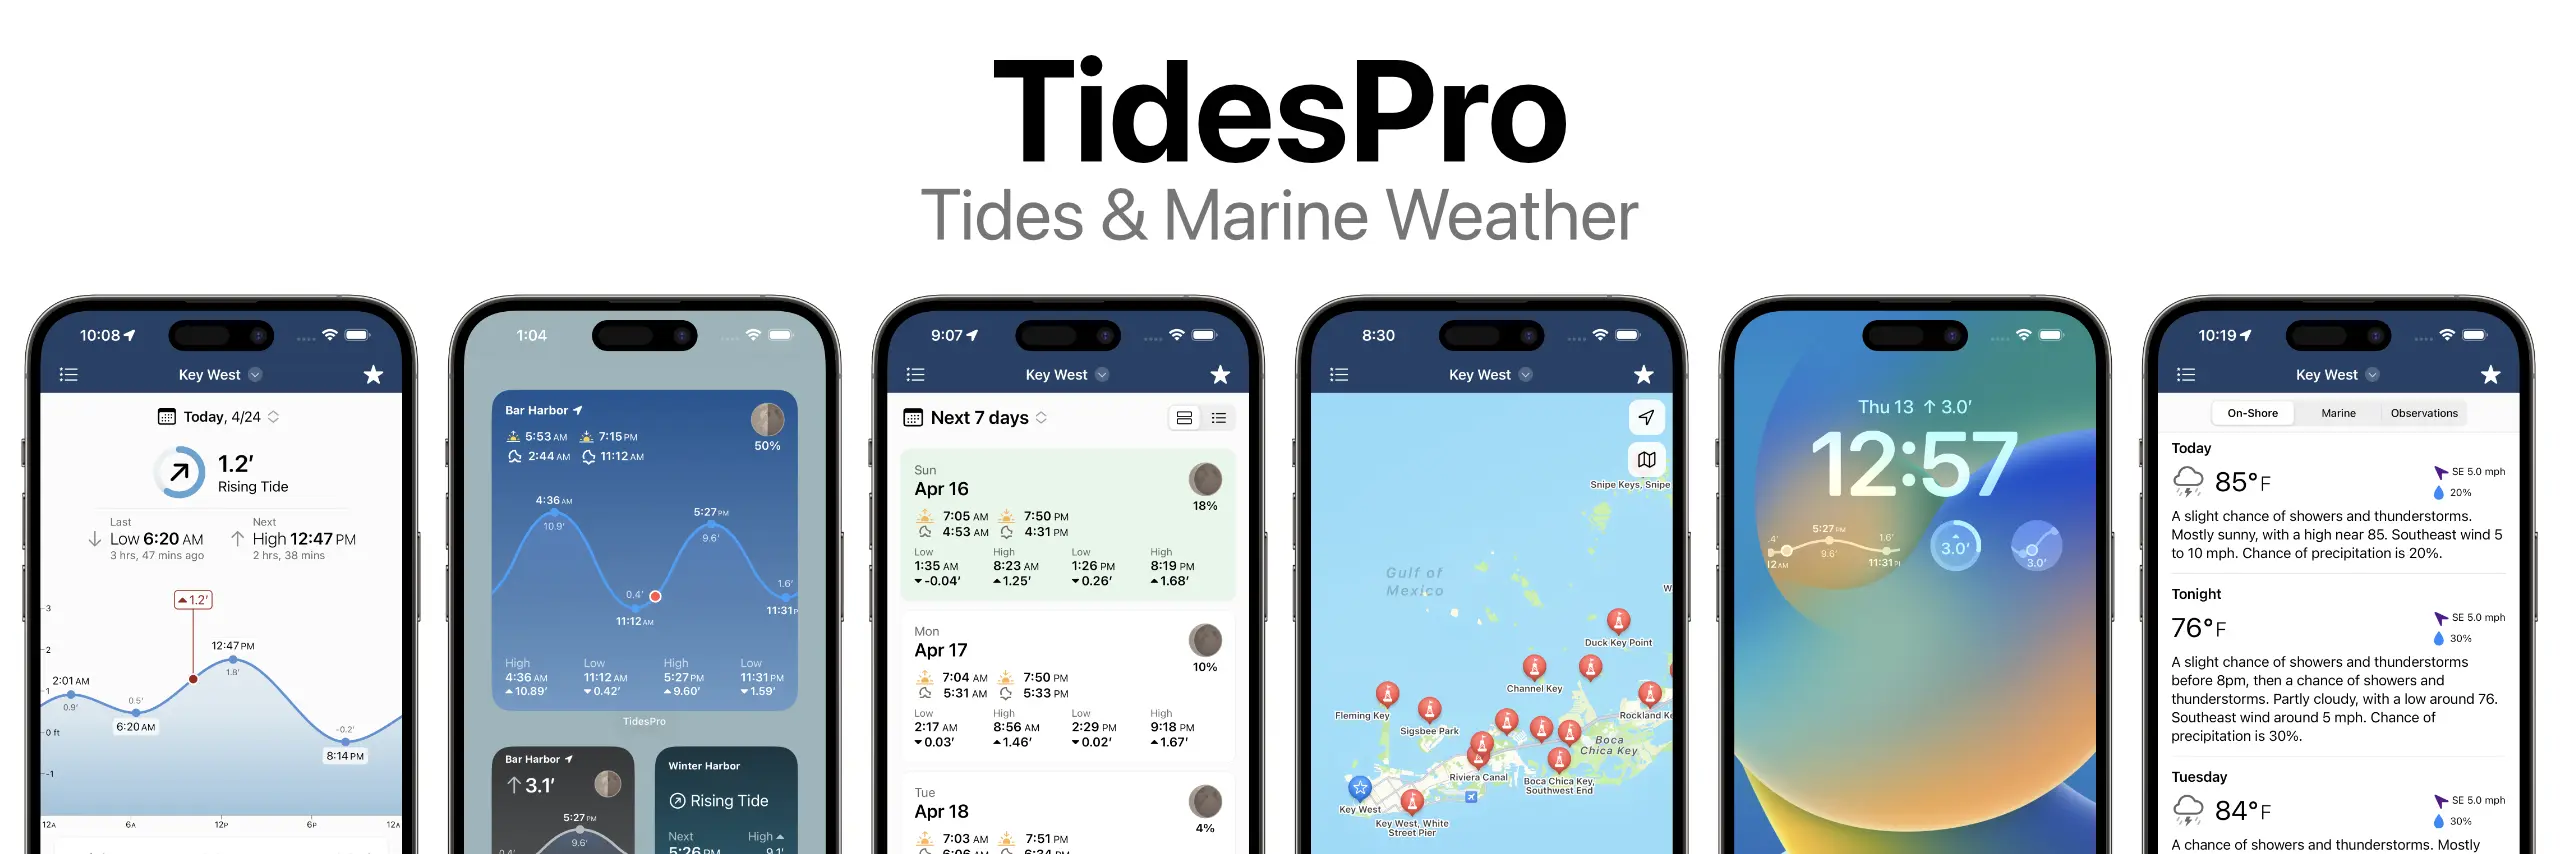 TidesPro App